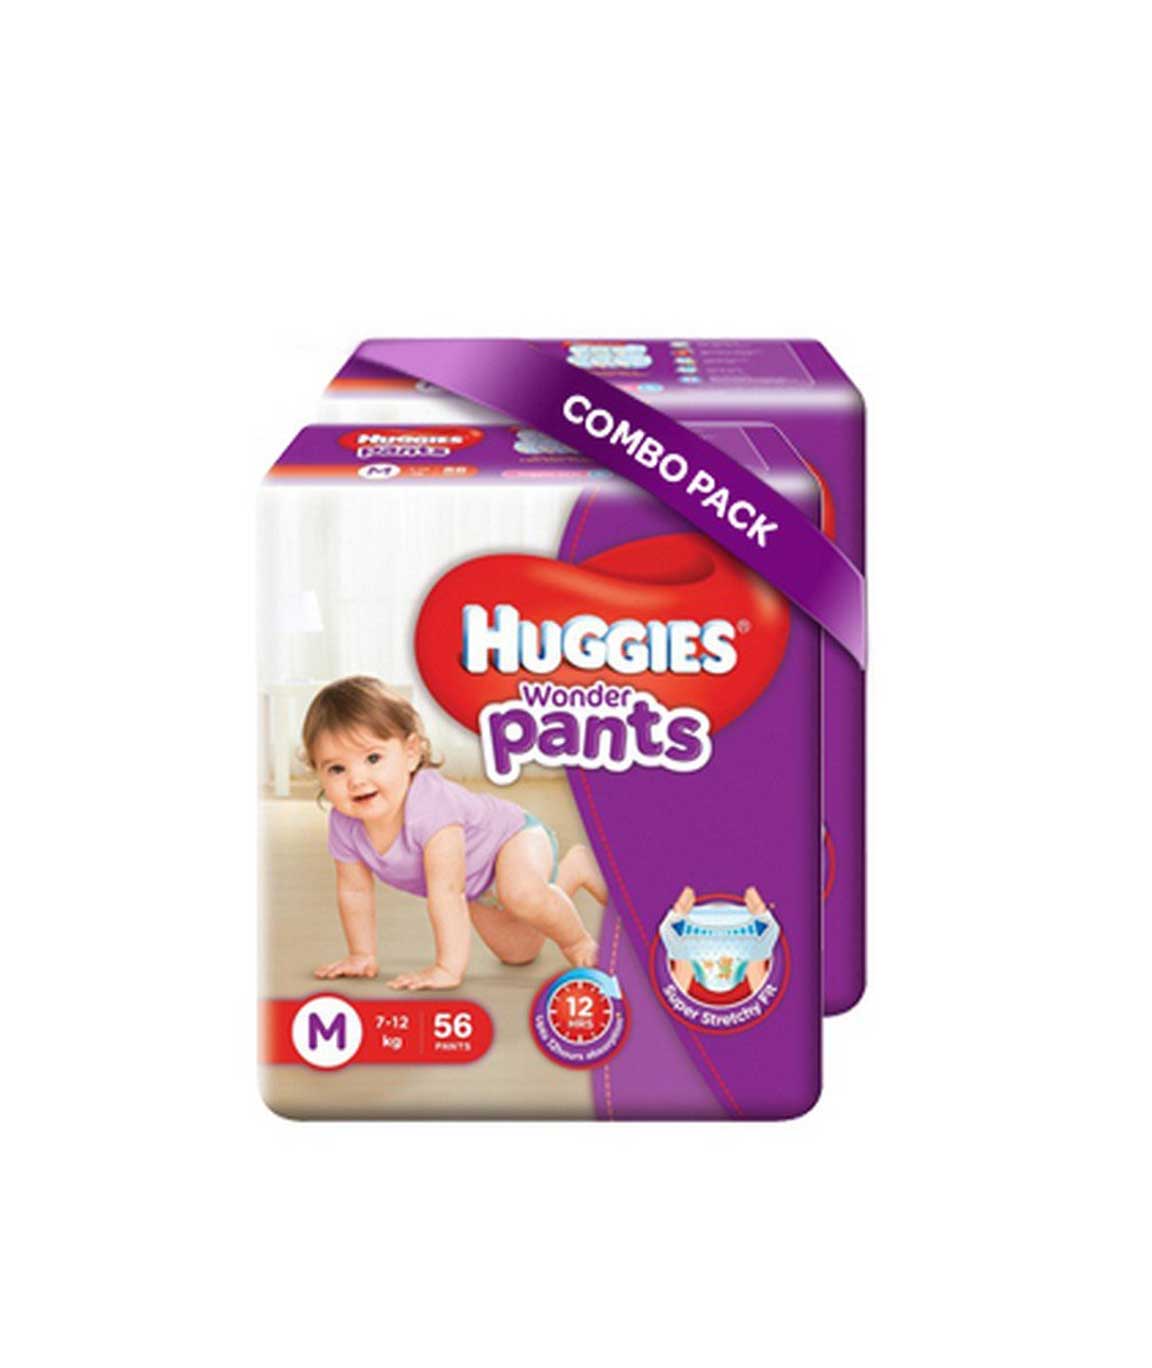 Huggies Wonder Pants Medium Size Diapers (Pack of 2, 56 Counts per Pack)